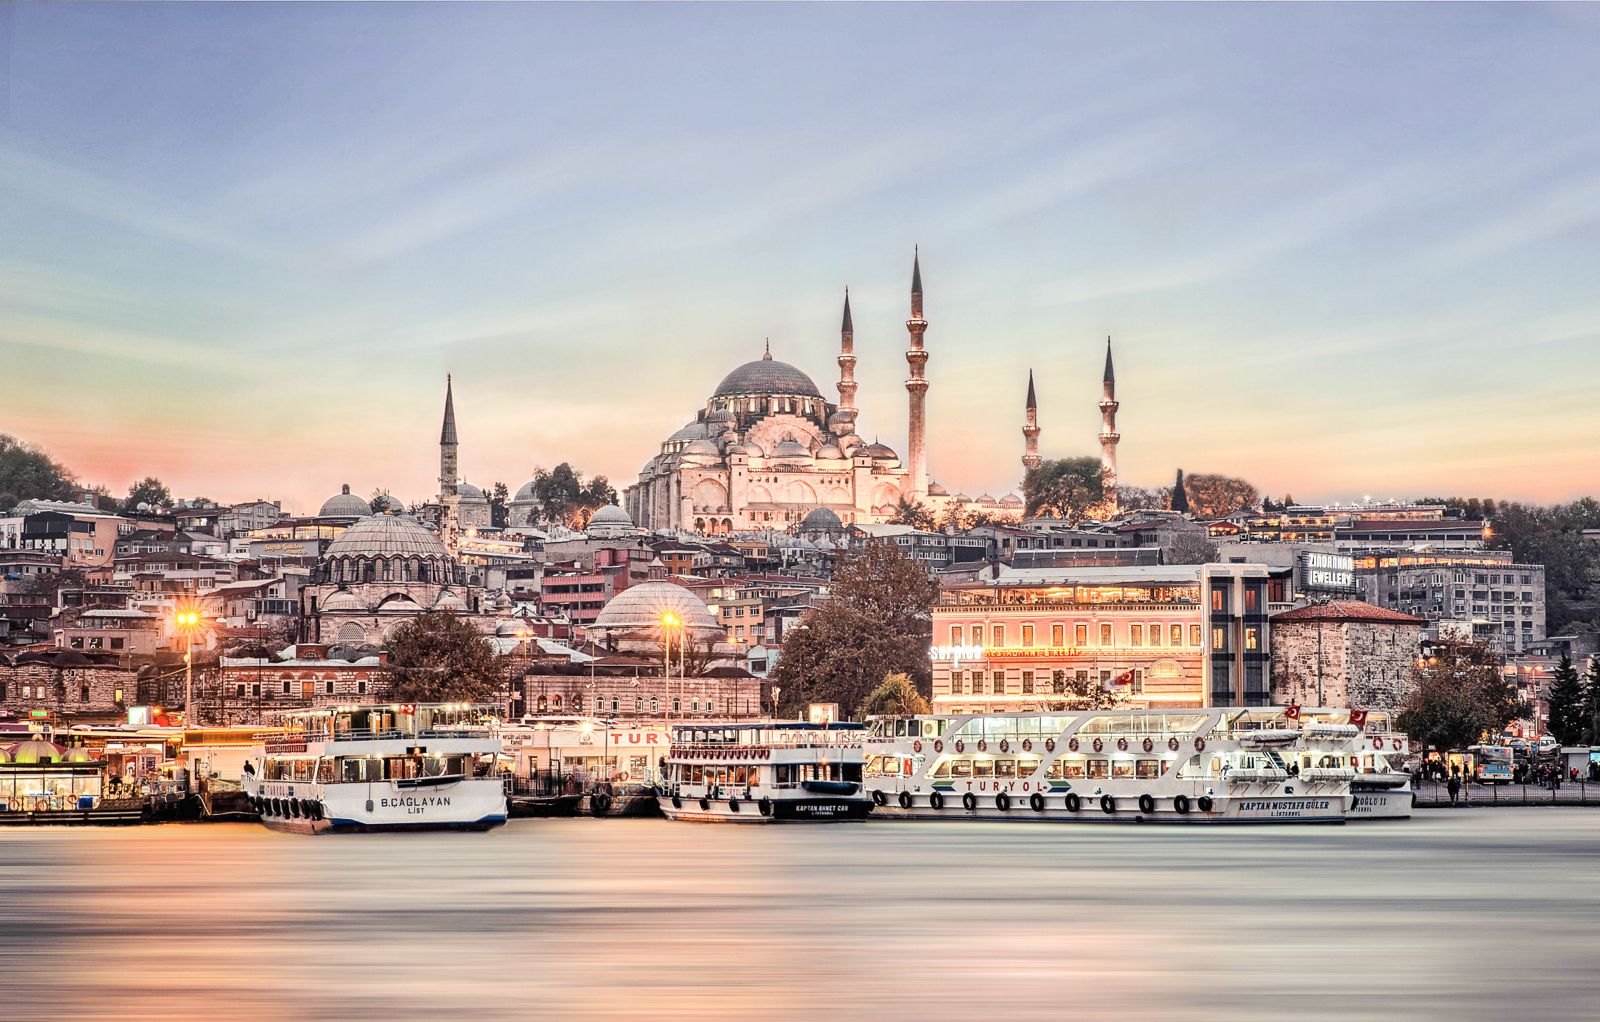 อิสตันบูล (Istanbul), ประเทศตุรกี (Turkey)